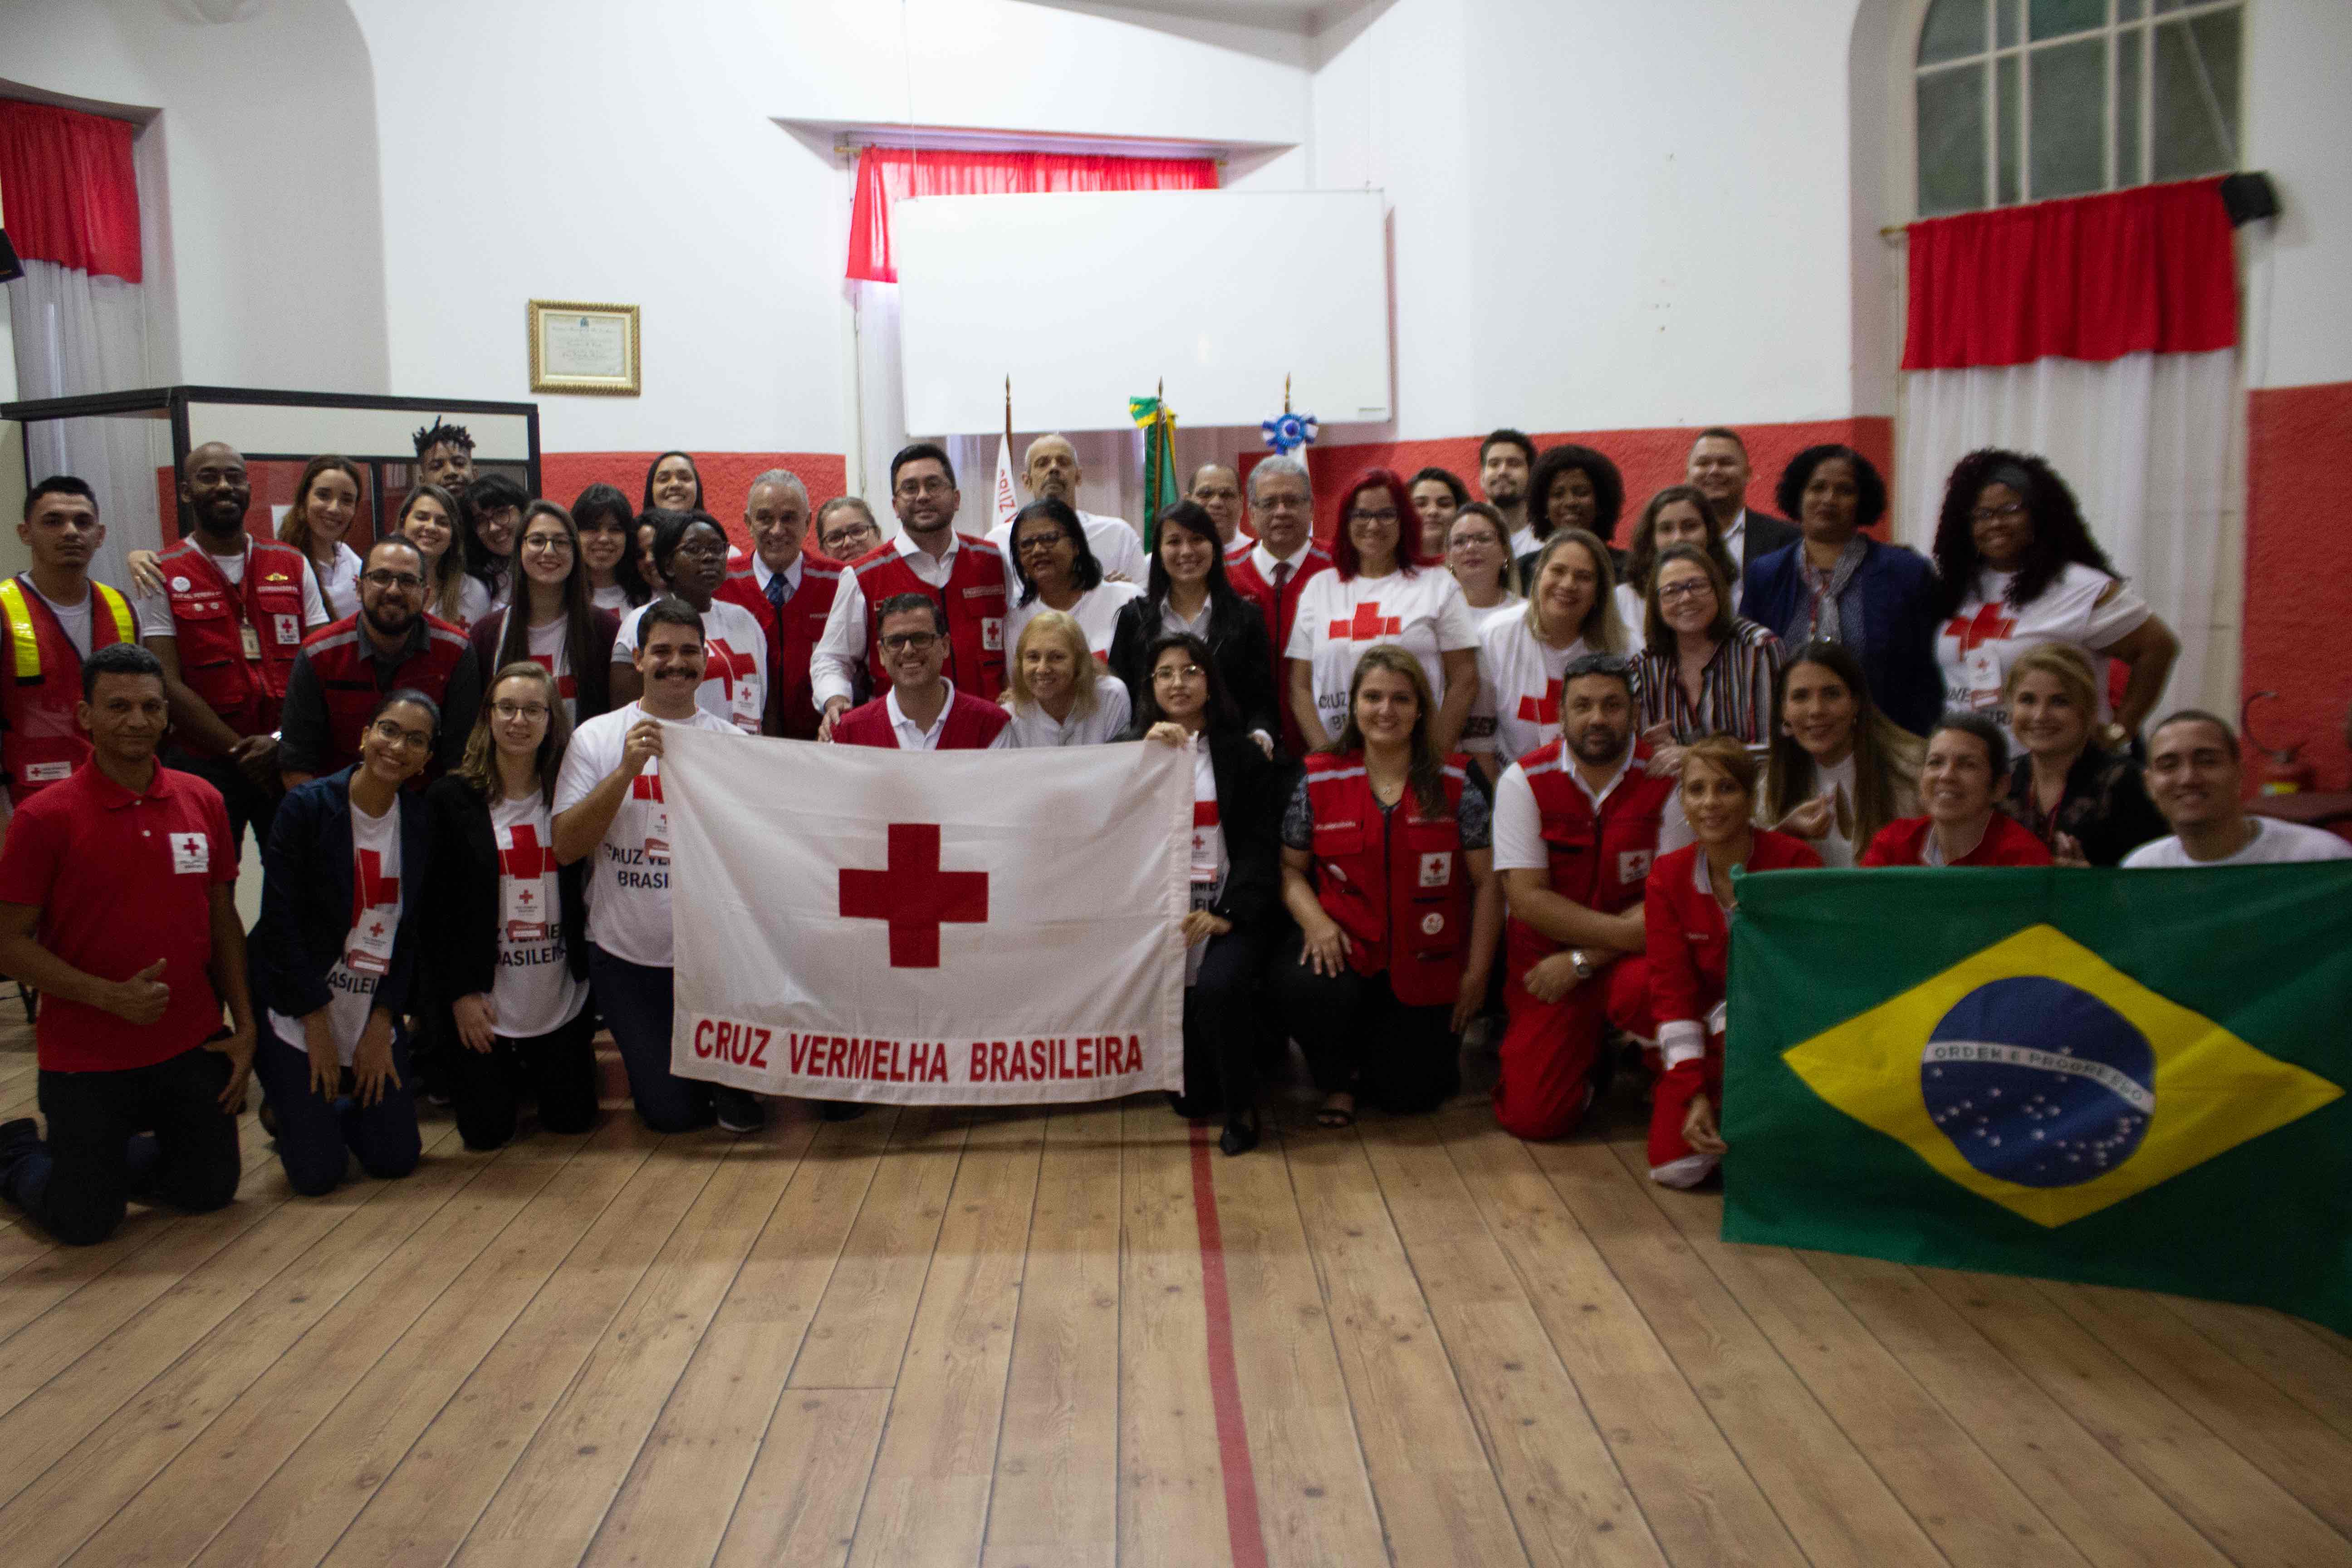 16-voluntarios-brasil-ppal.jpg, 17-voluntarios-brasil.jpg, 18-voluntarios-brasil.jpg